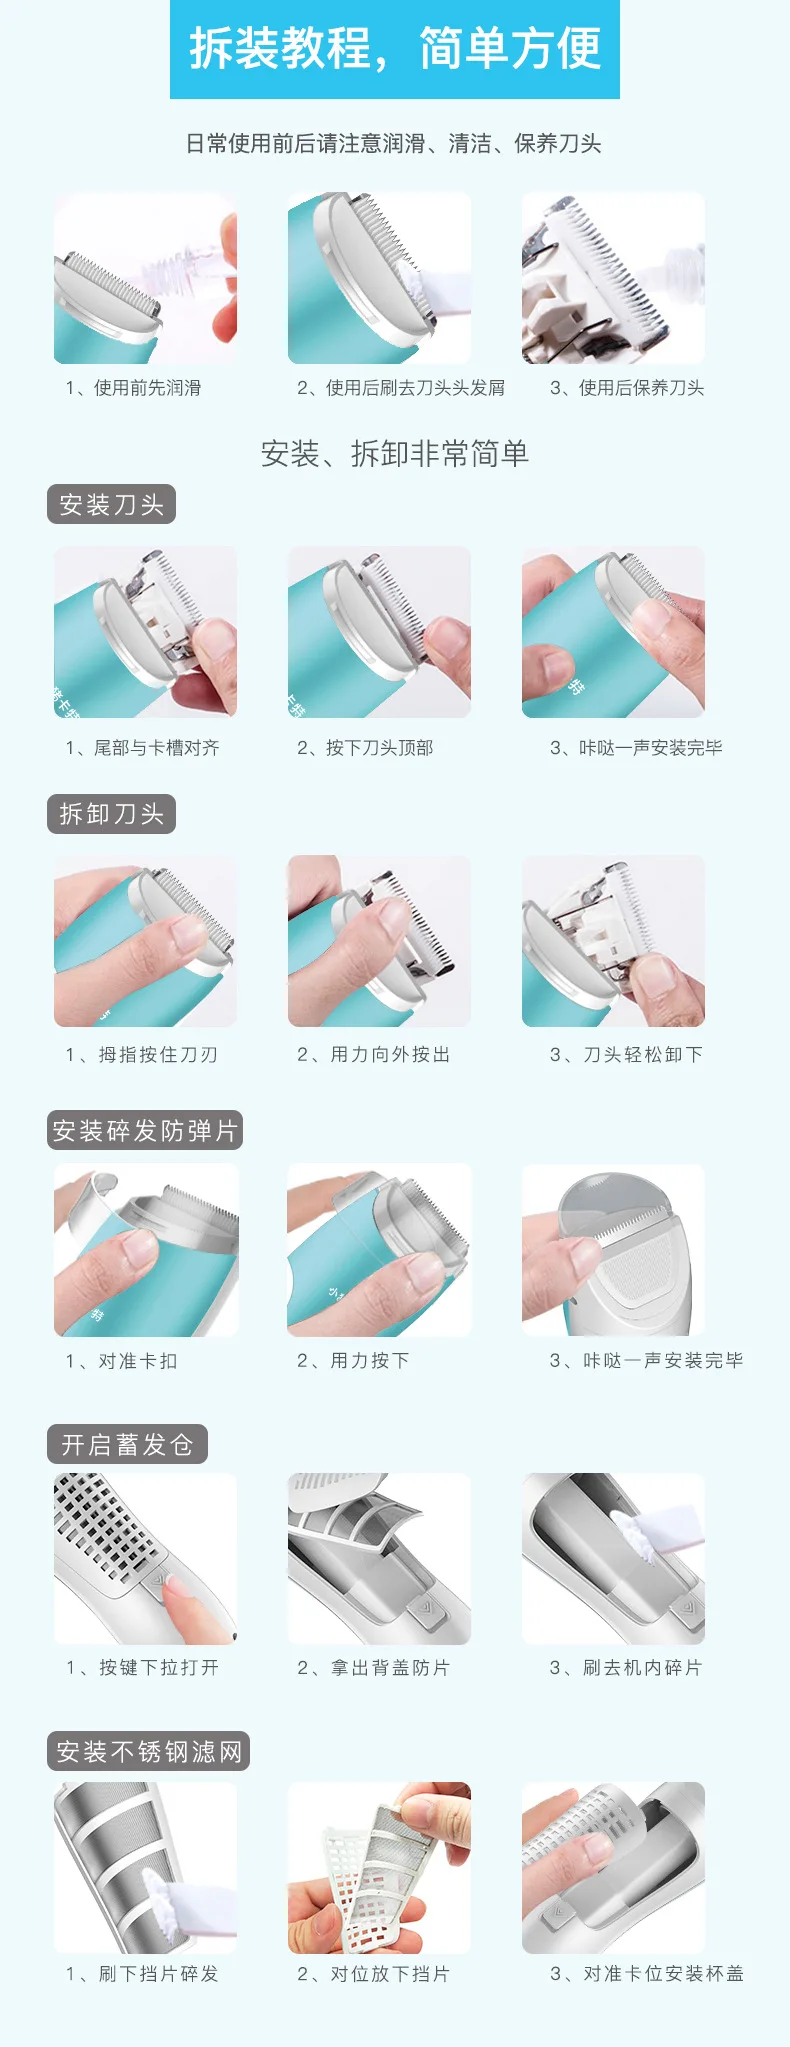 Mining Yuan Bao, водонепроницаемая машинка для стрижки волос для младенцев, бесшумная, для младенцев, поставляется с волосами, полностью моющиеся, для дома